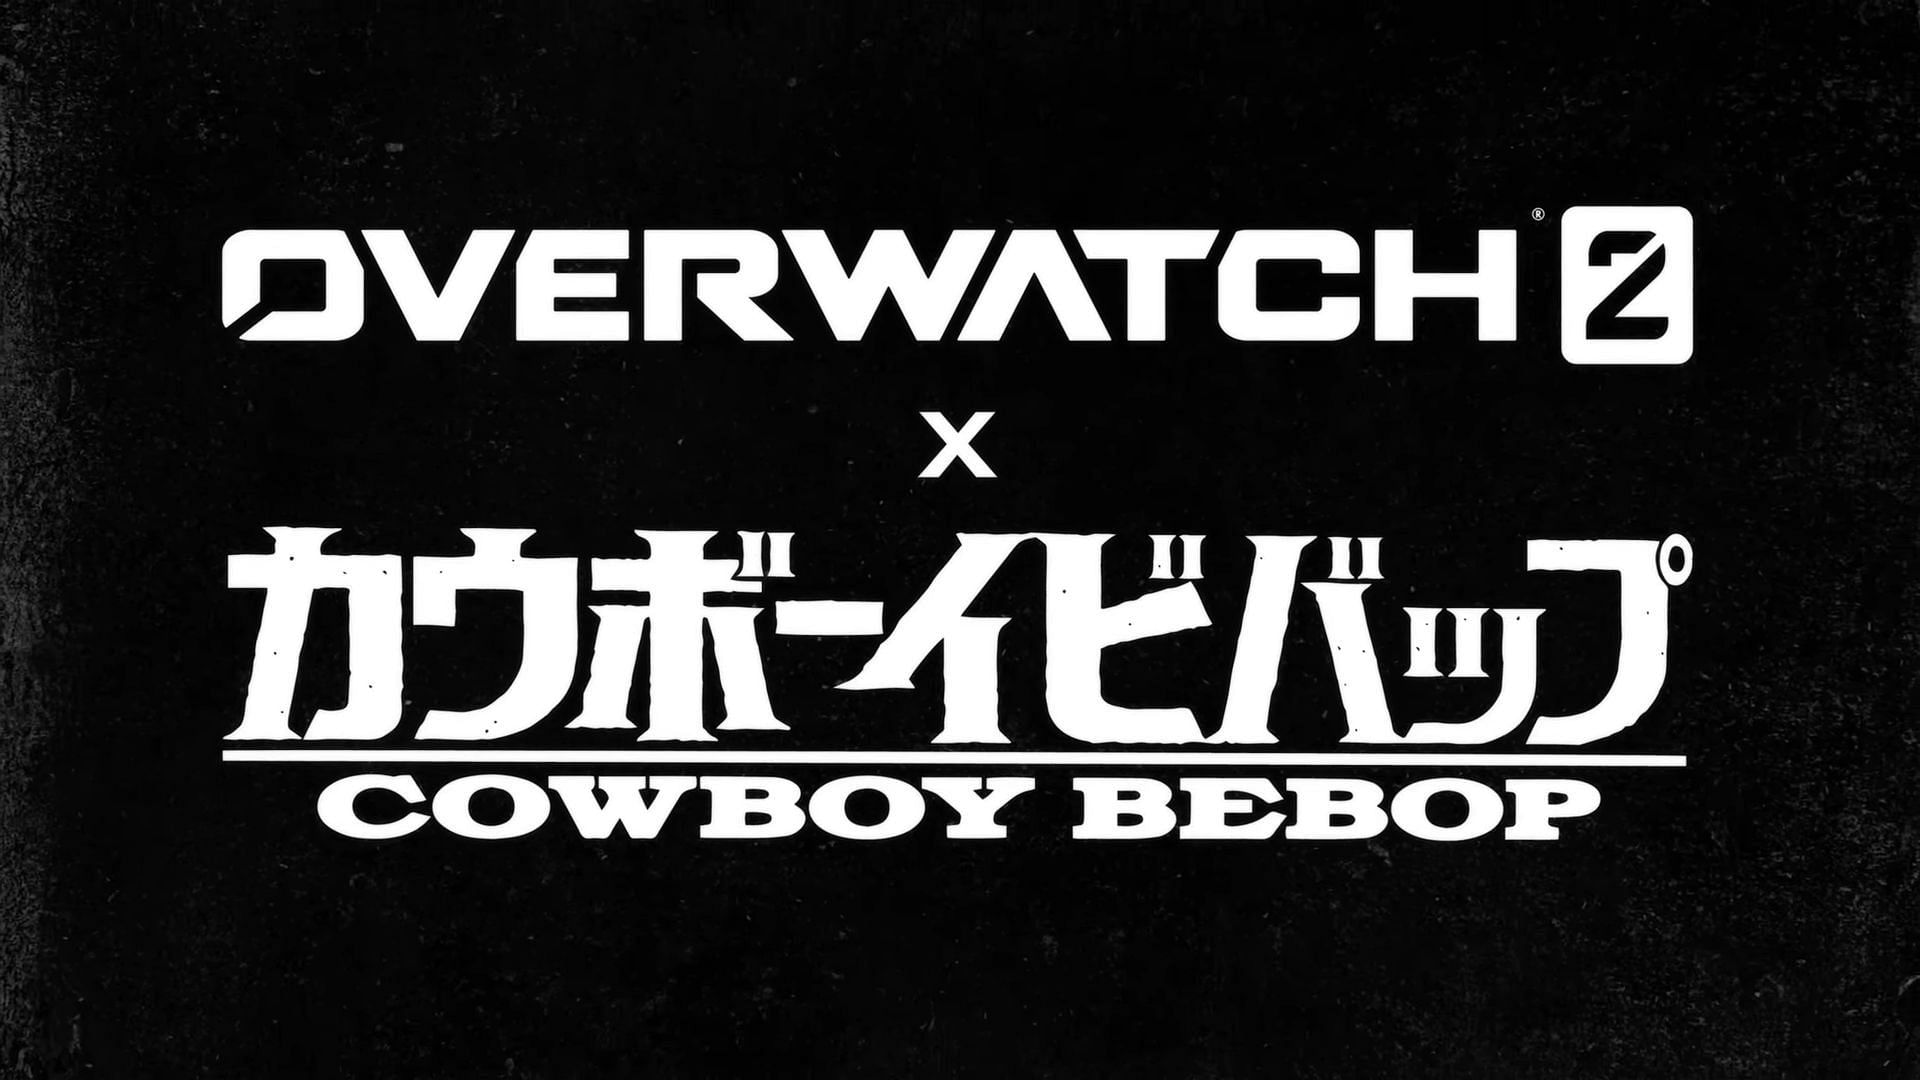 Cowboy Bebop is coming to Overwatch 2.